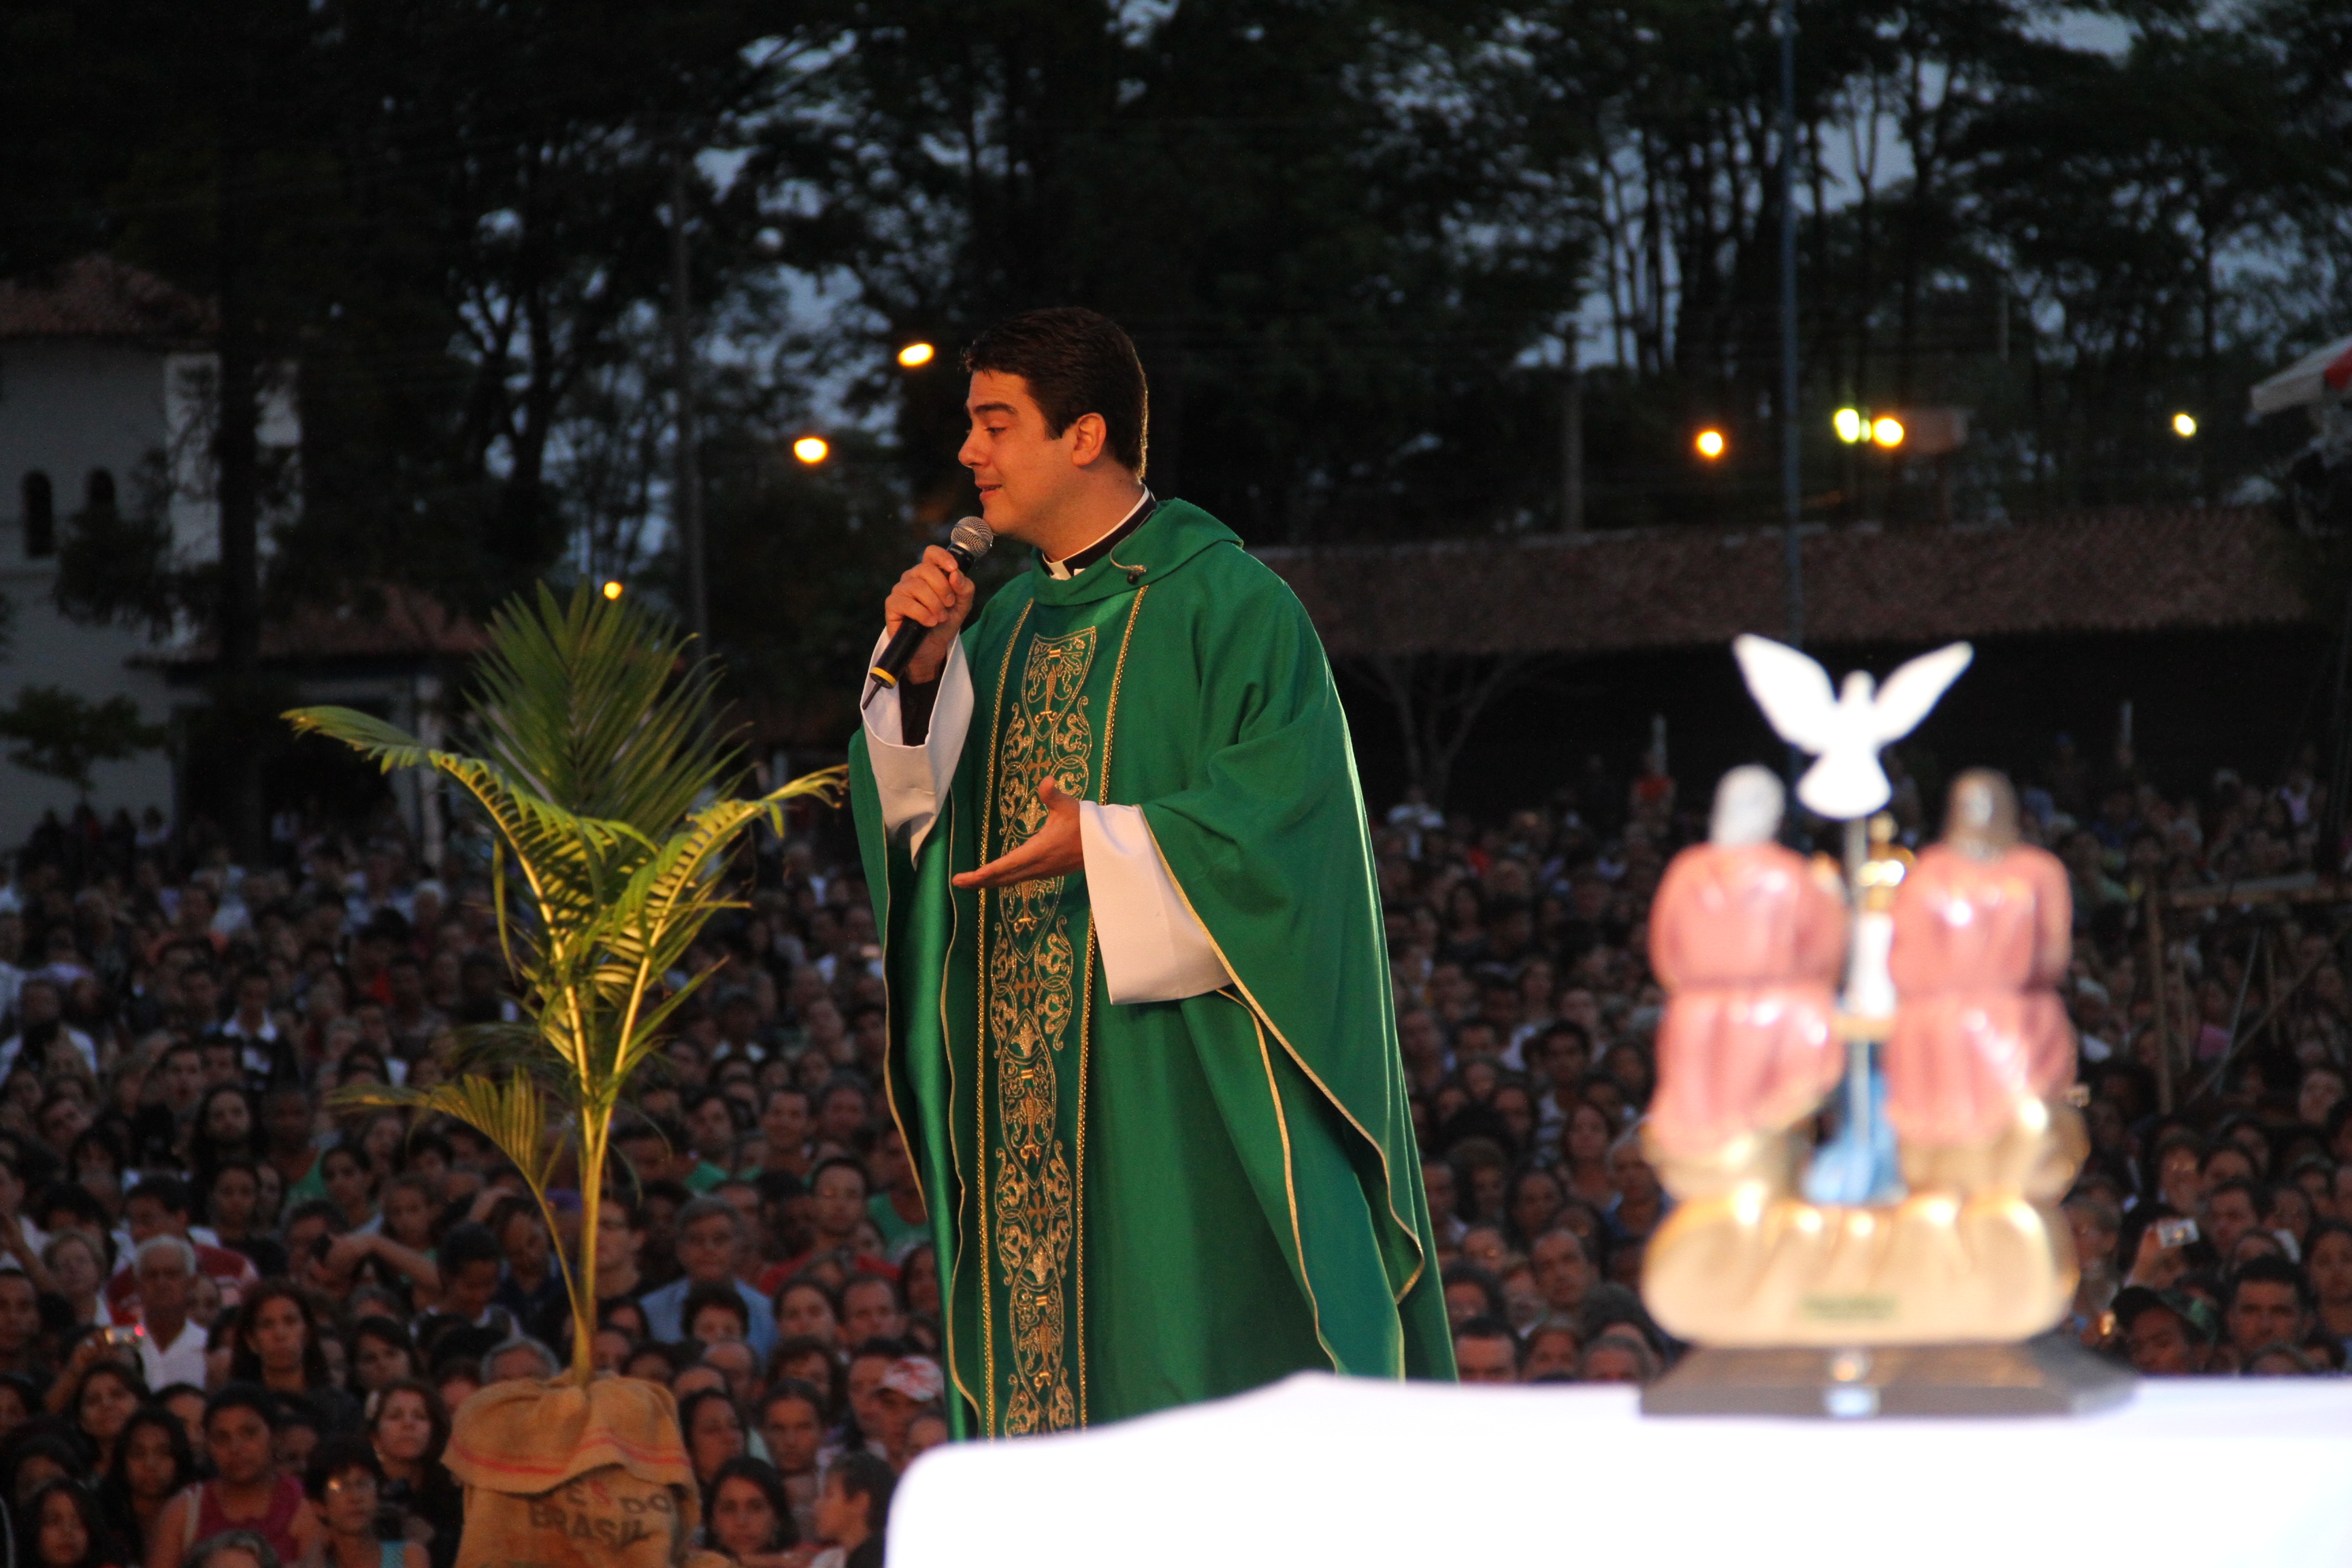 Padre Robson de Oliveira ministrará a missa de abertura (Foto: Reprodução)